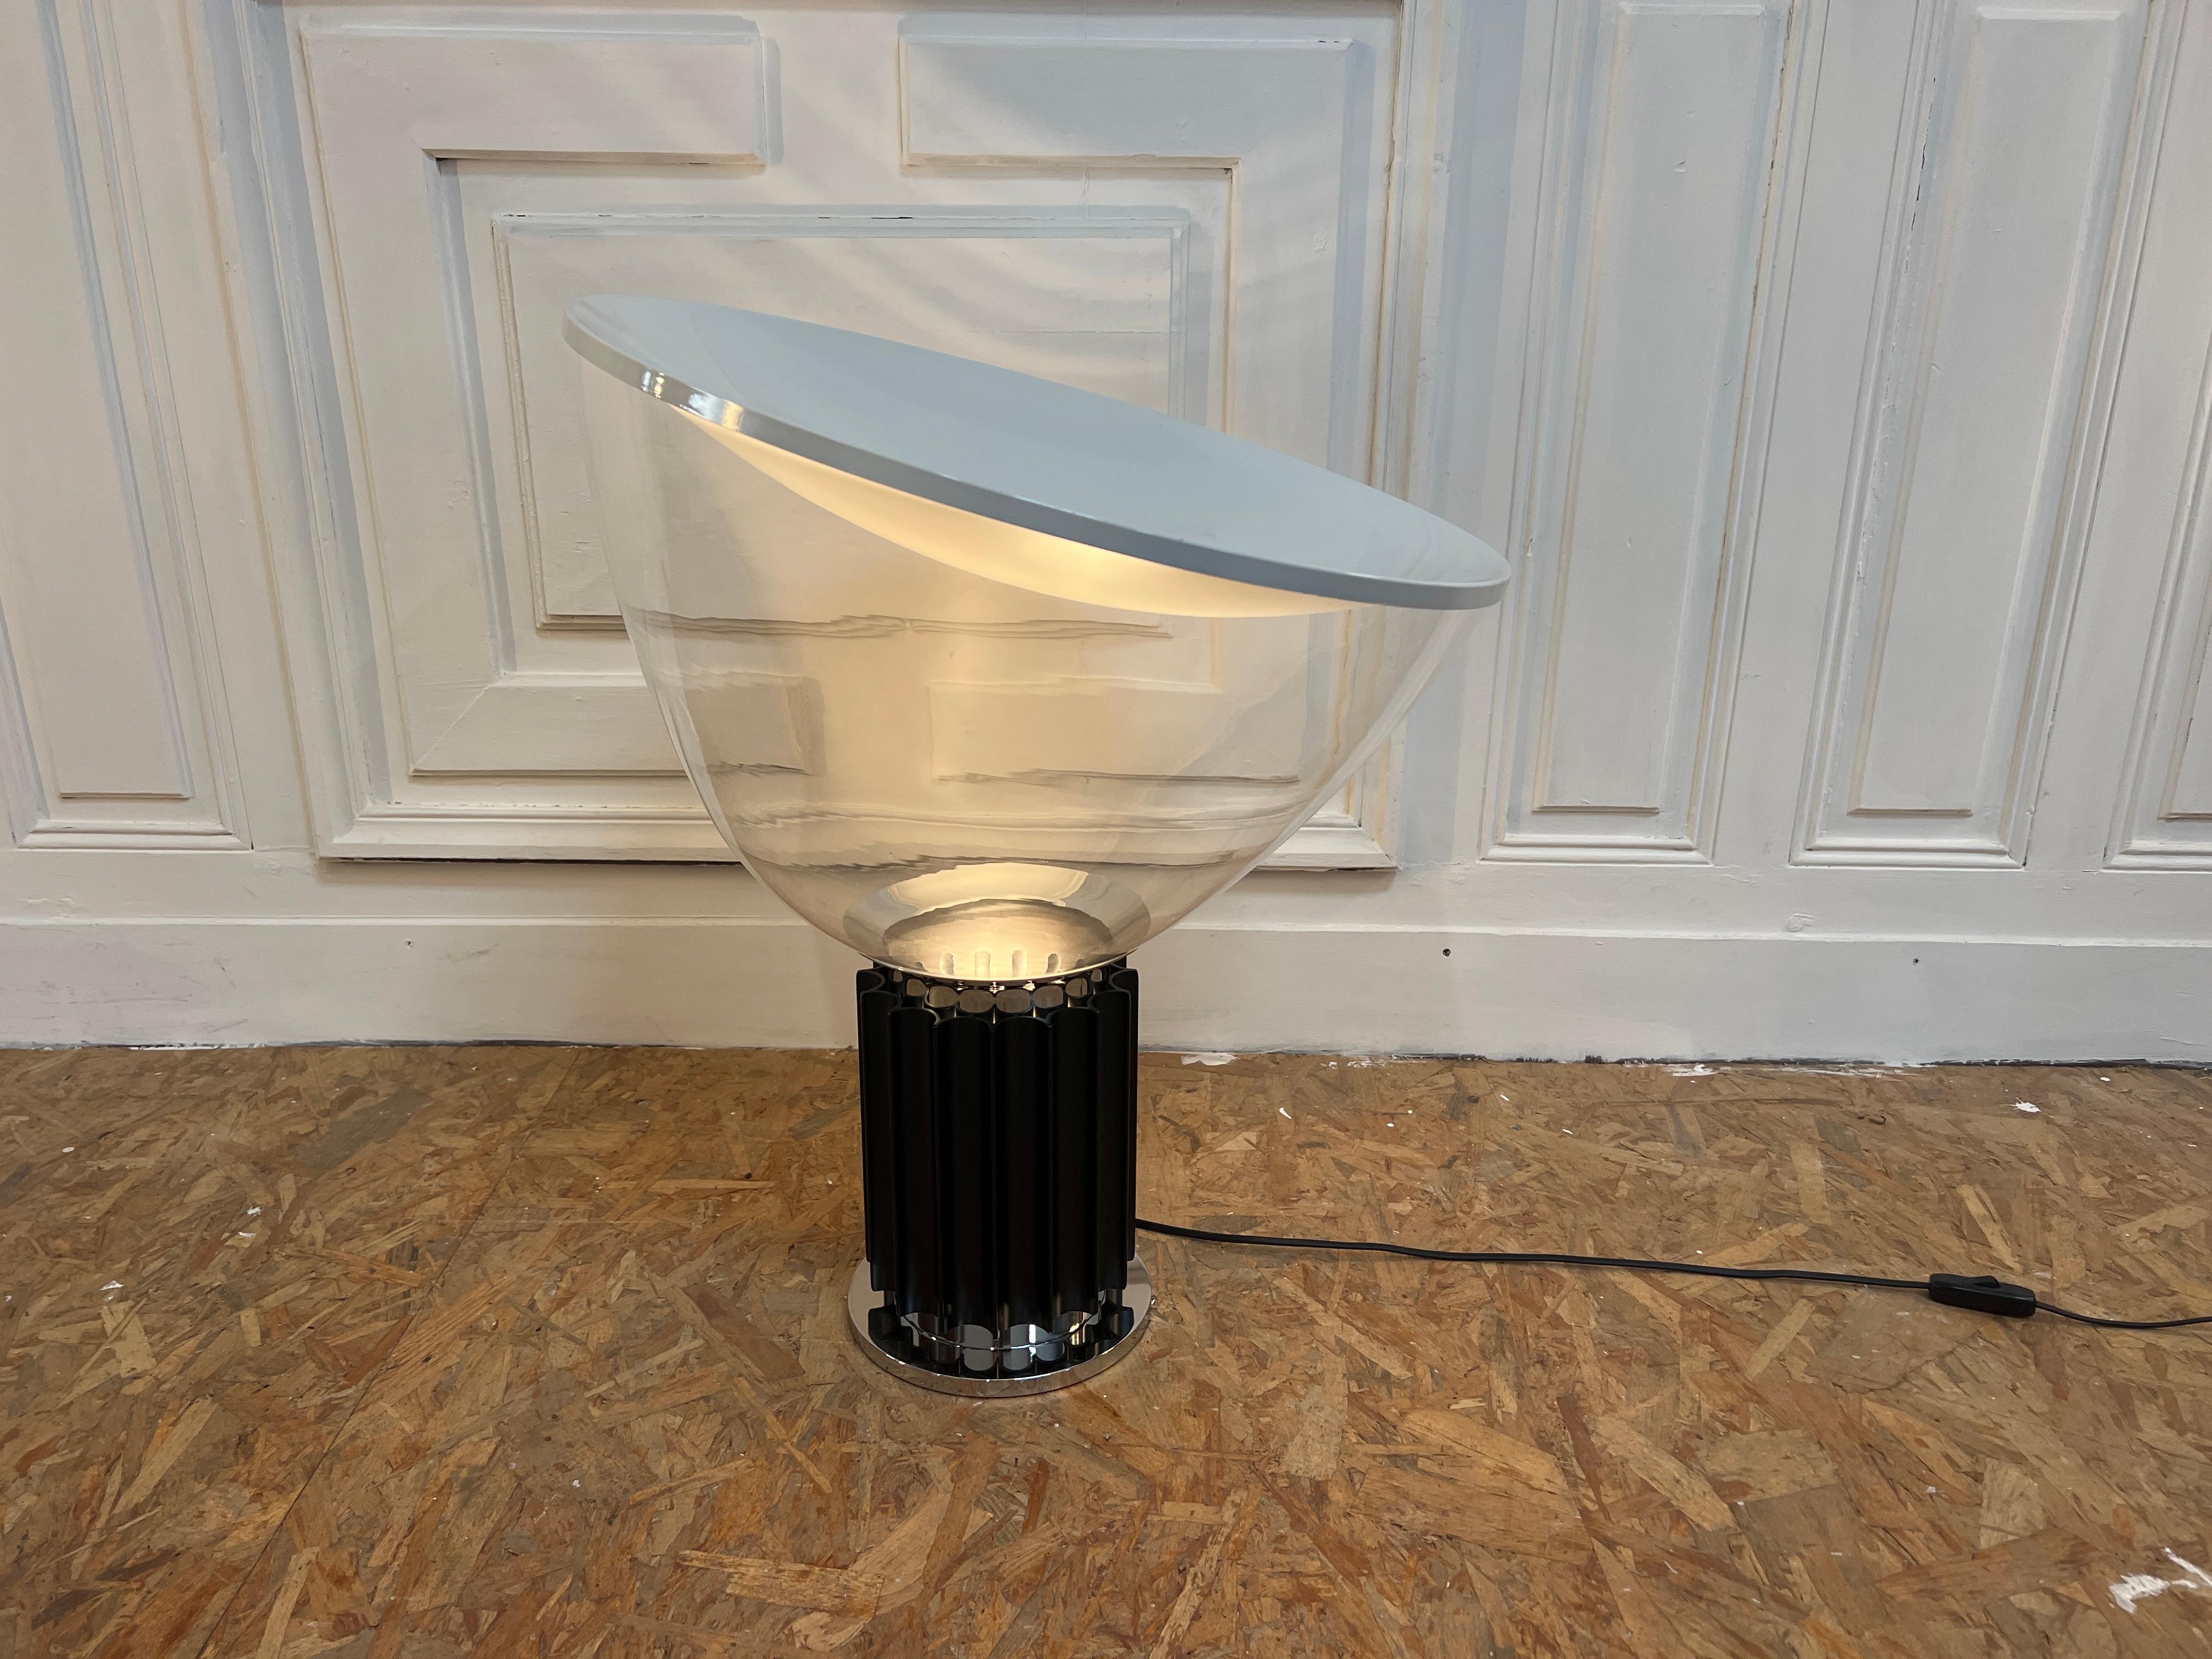 Wunderschöner Lampentisch, Modell Taccia von Flos edition 1990s 
Mit einem Murano' Glas in 50 cm (Durchmesser)

Die Leuchte Taccia wurde 1962 von den italienischen Designern Achille und Pier Giacomo Castiglioni entworfen. Sie kombiniert sehr edle